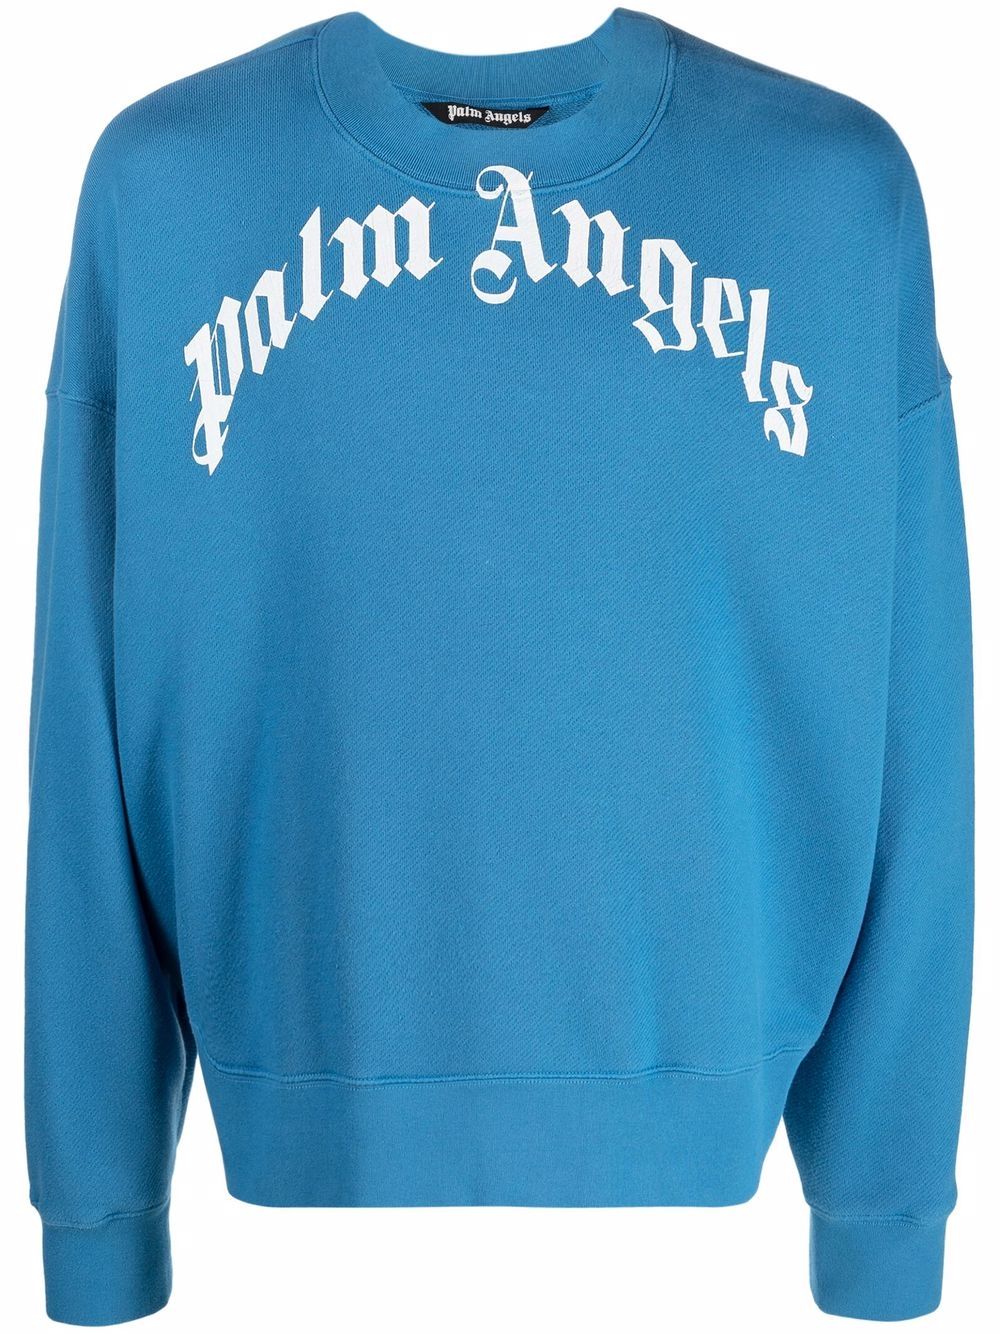 Palm Angels Curved-Logo Sweatshirt - Farfetch